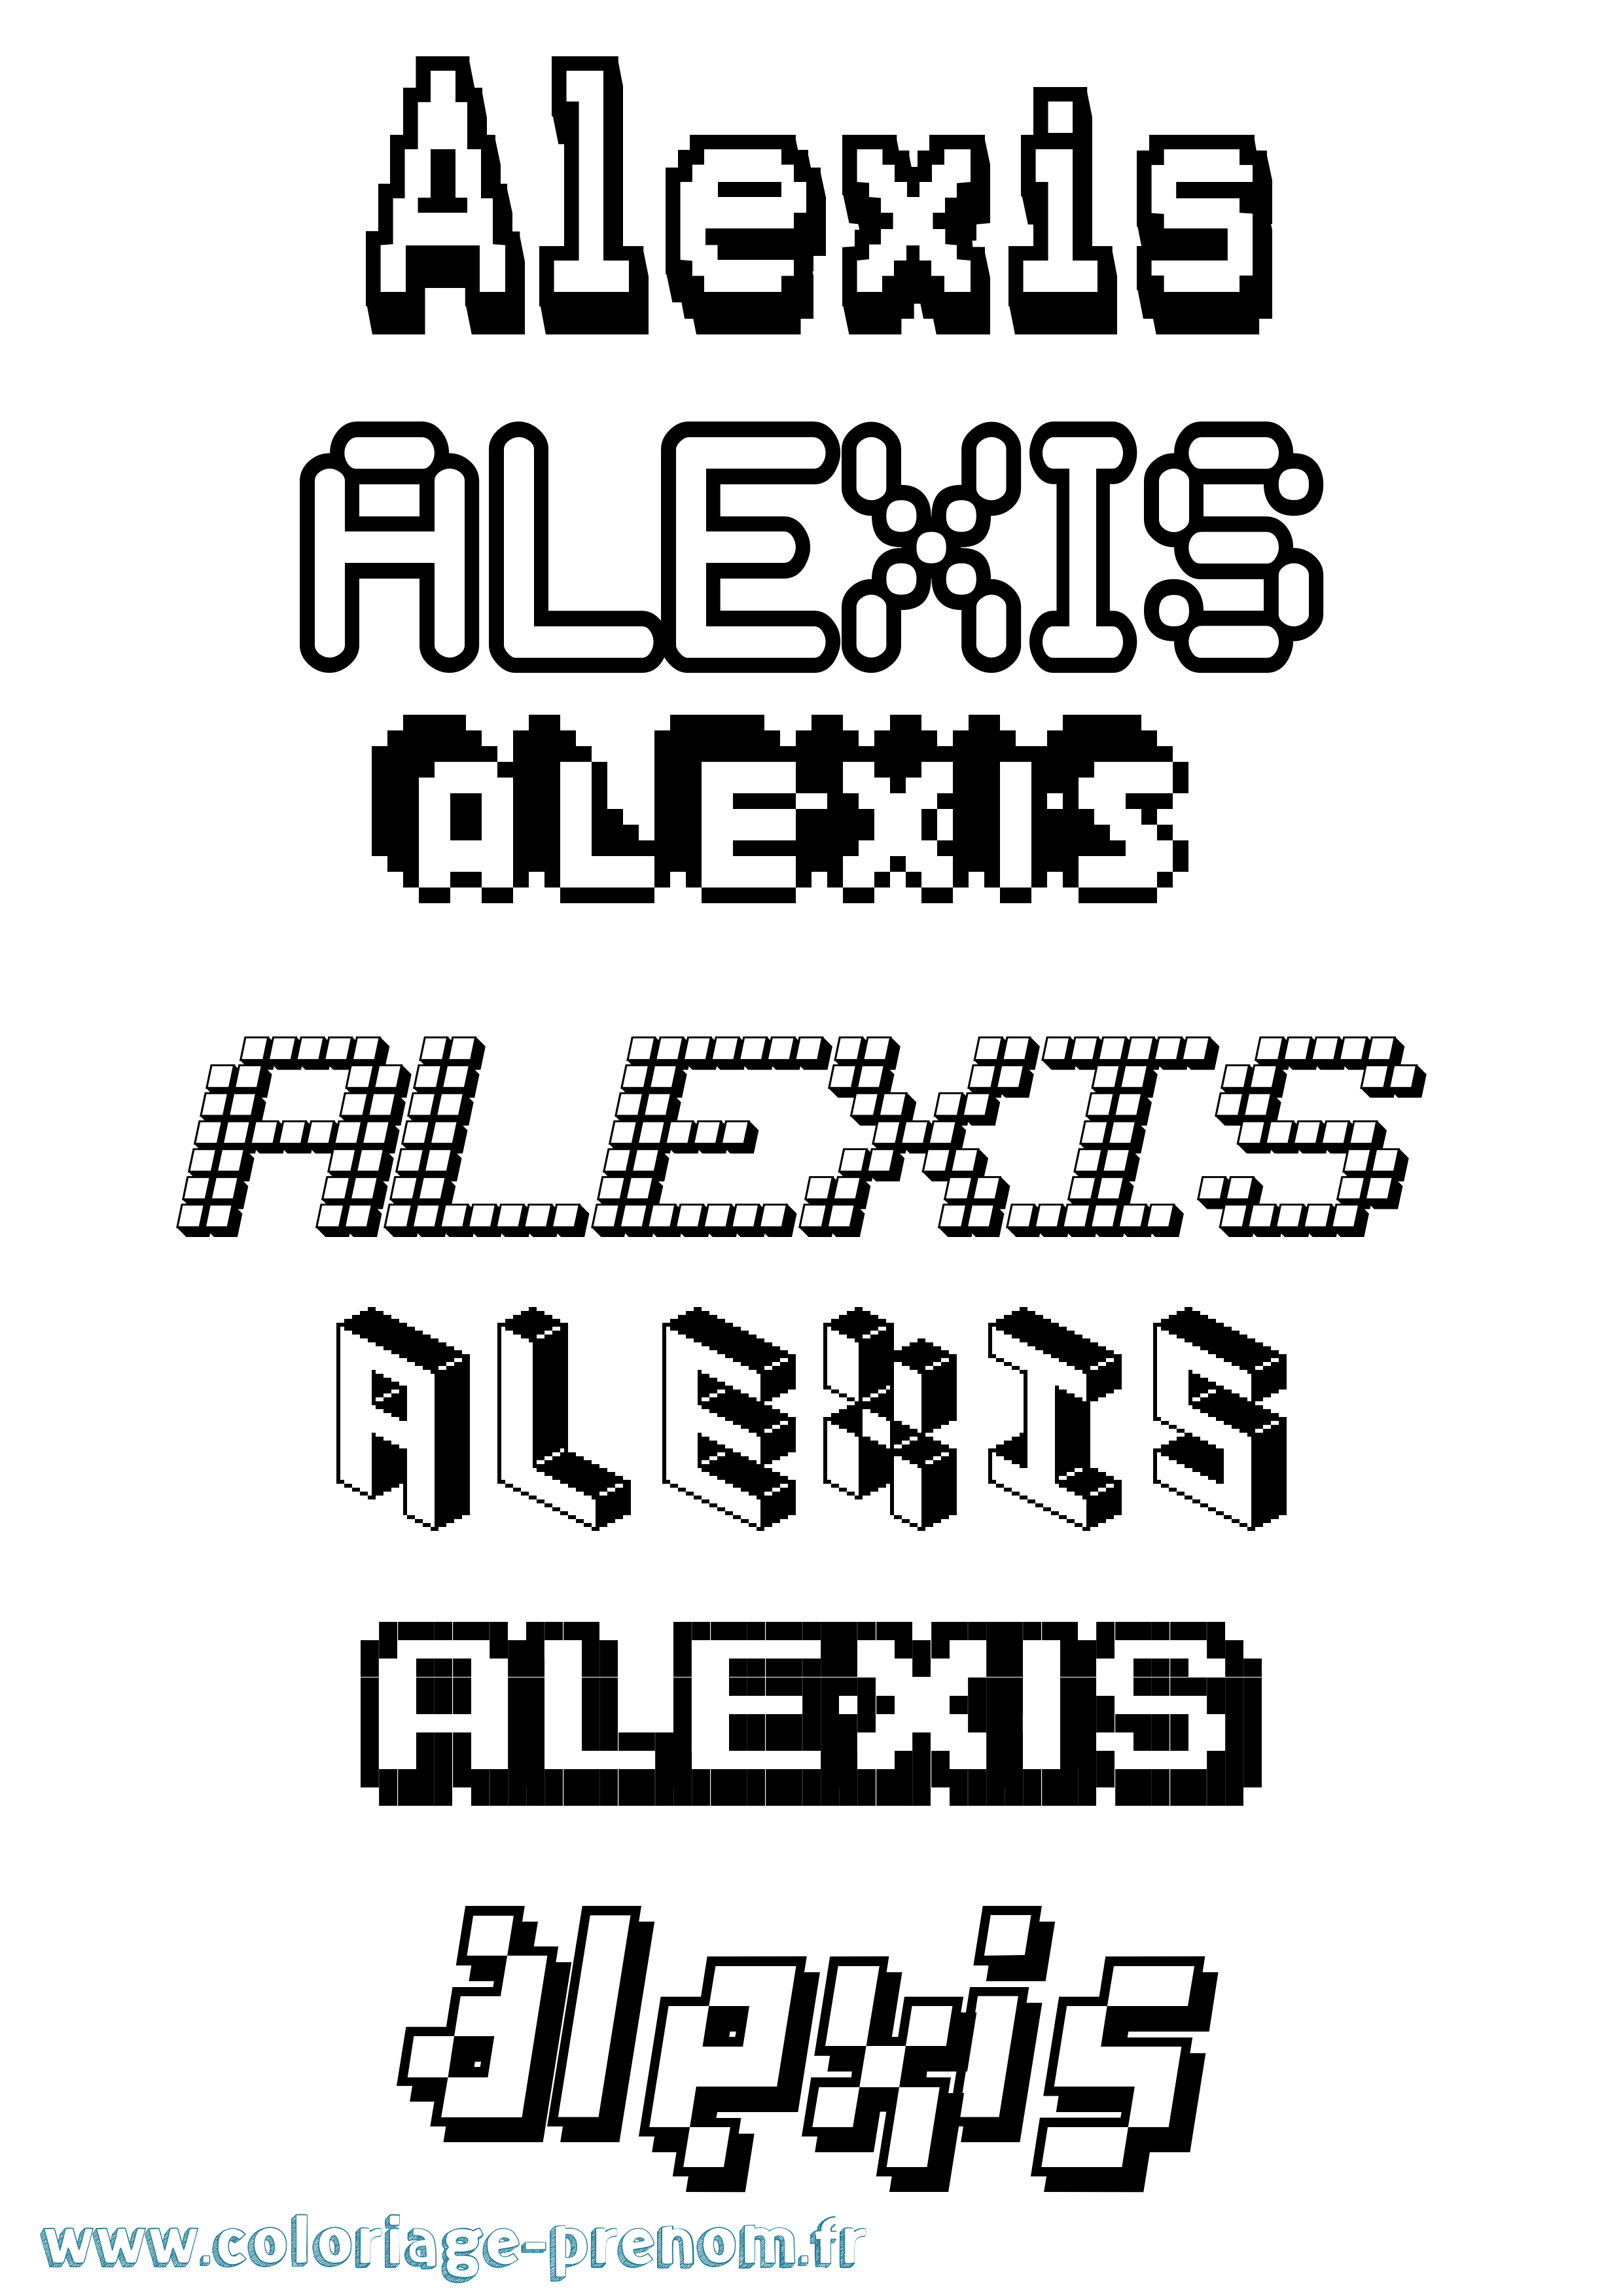 Coloriage prénom Alexis